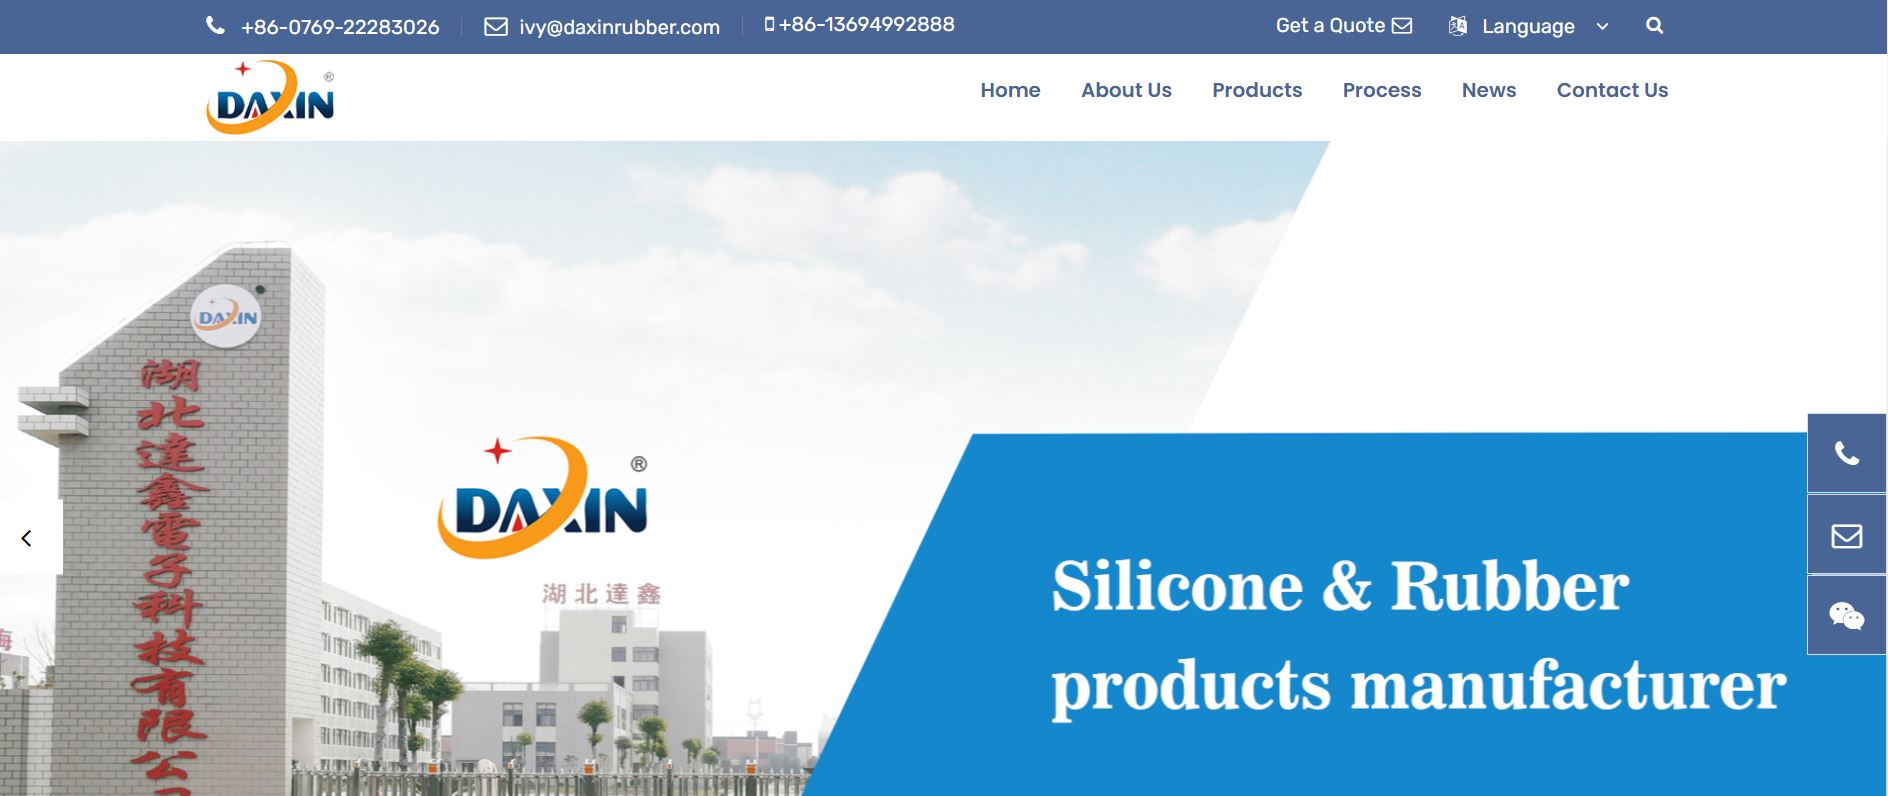 Dongguan Daxin Rubber Electronic Co., Ltd